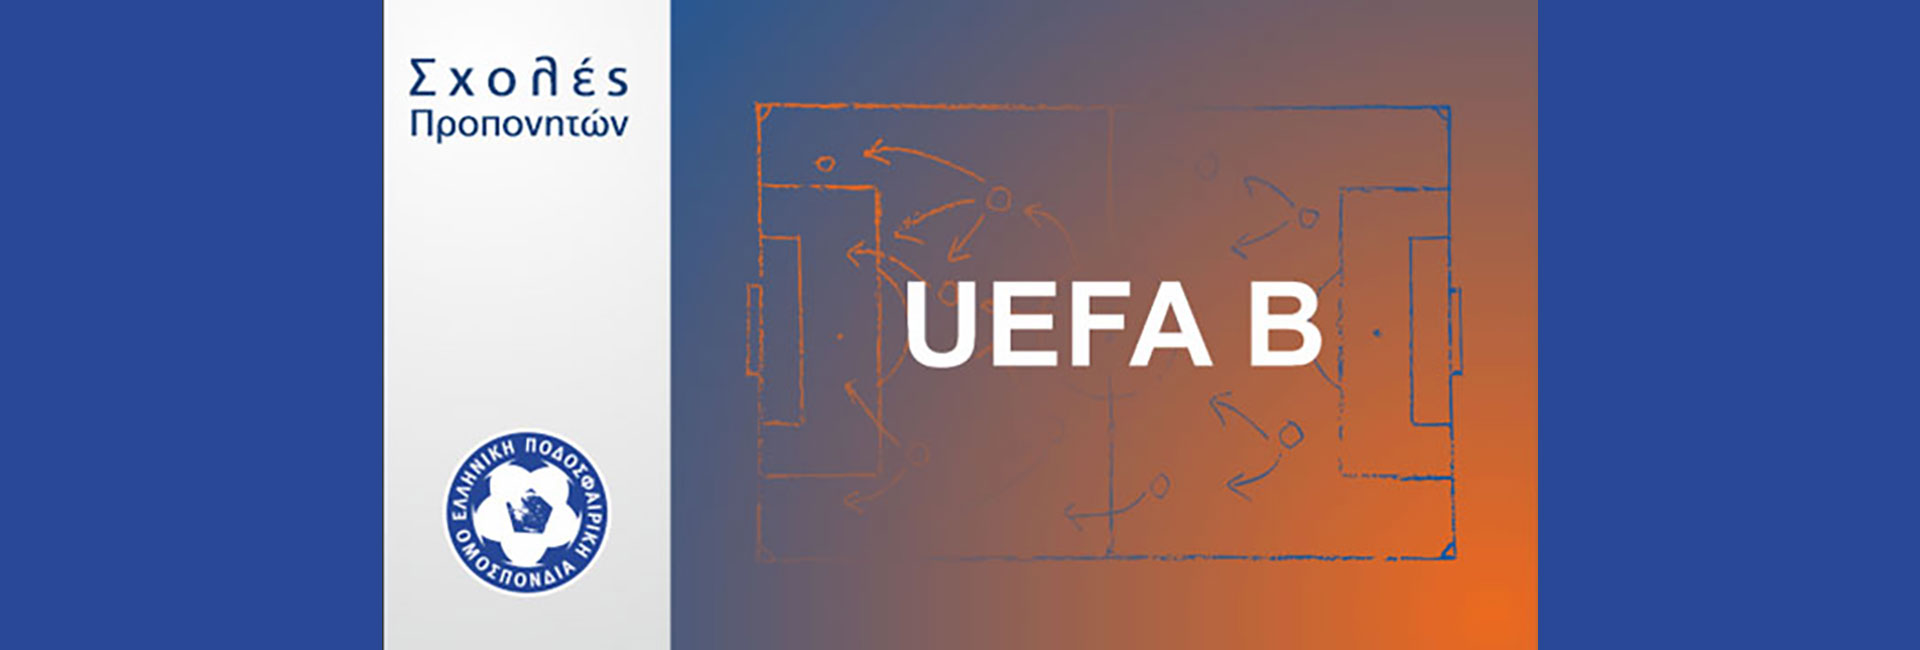 Ανακοίνωση σχολής UEFA-B στην ΕΠΣ Μακεδονίας